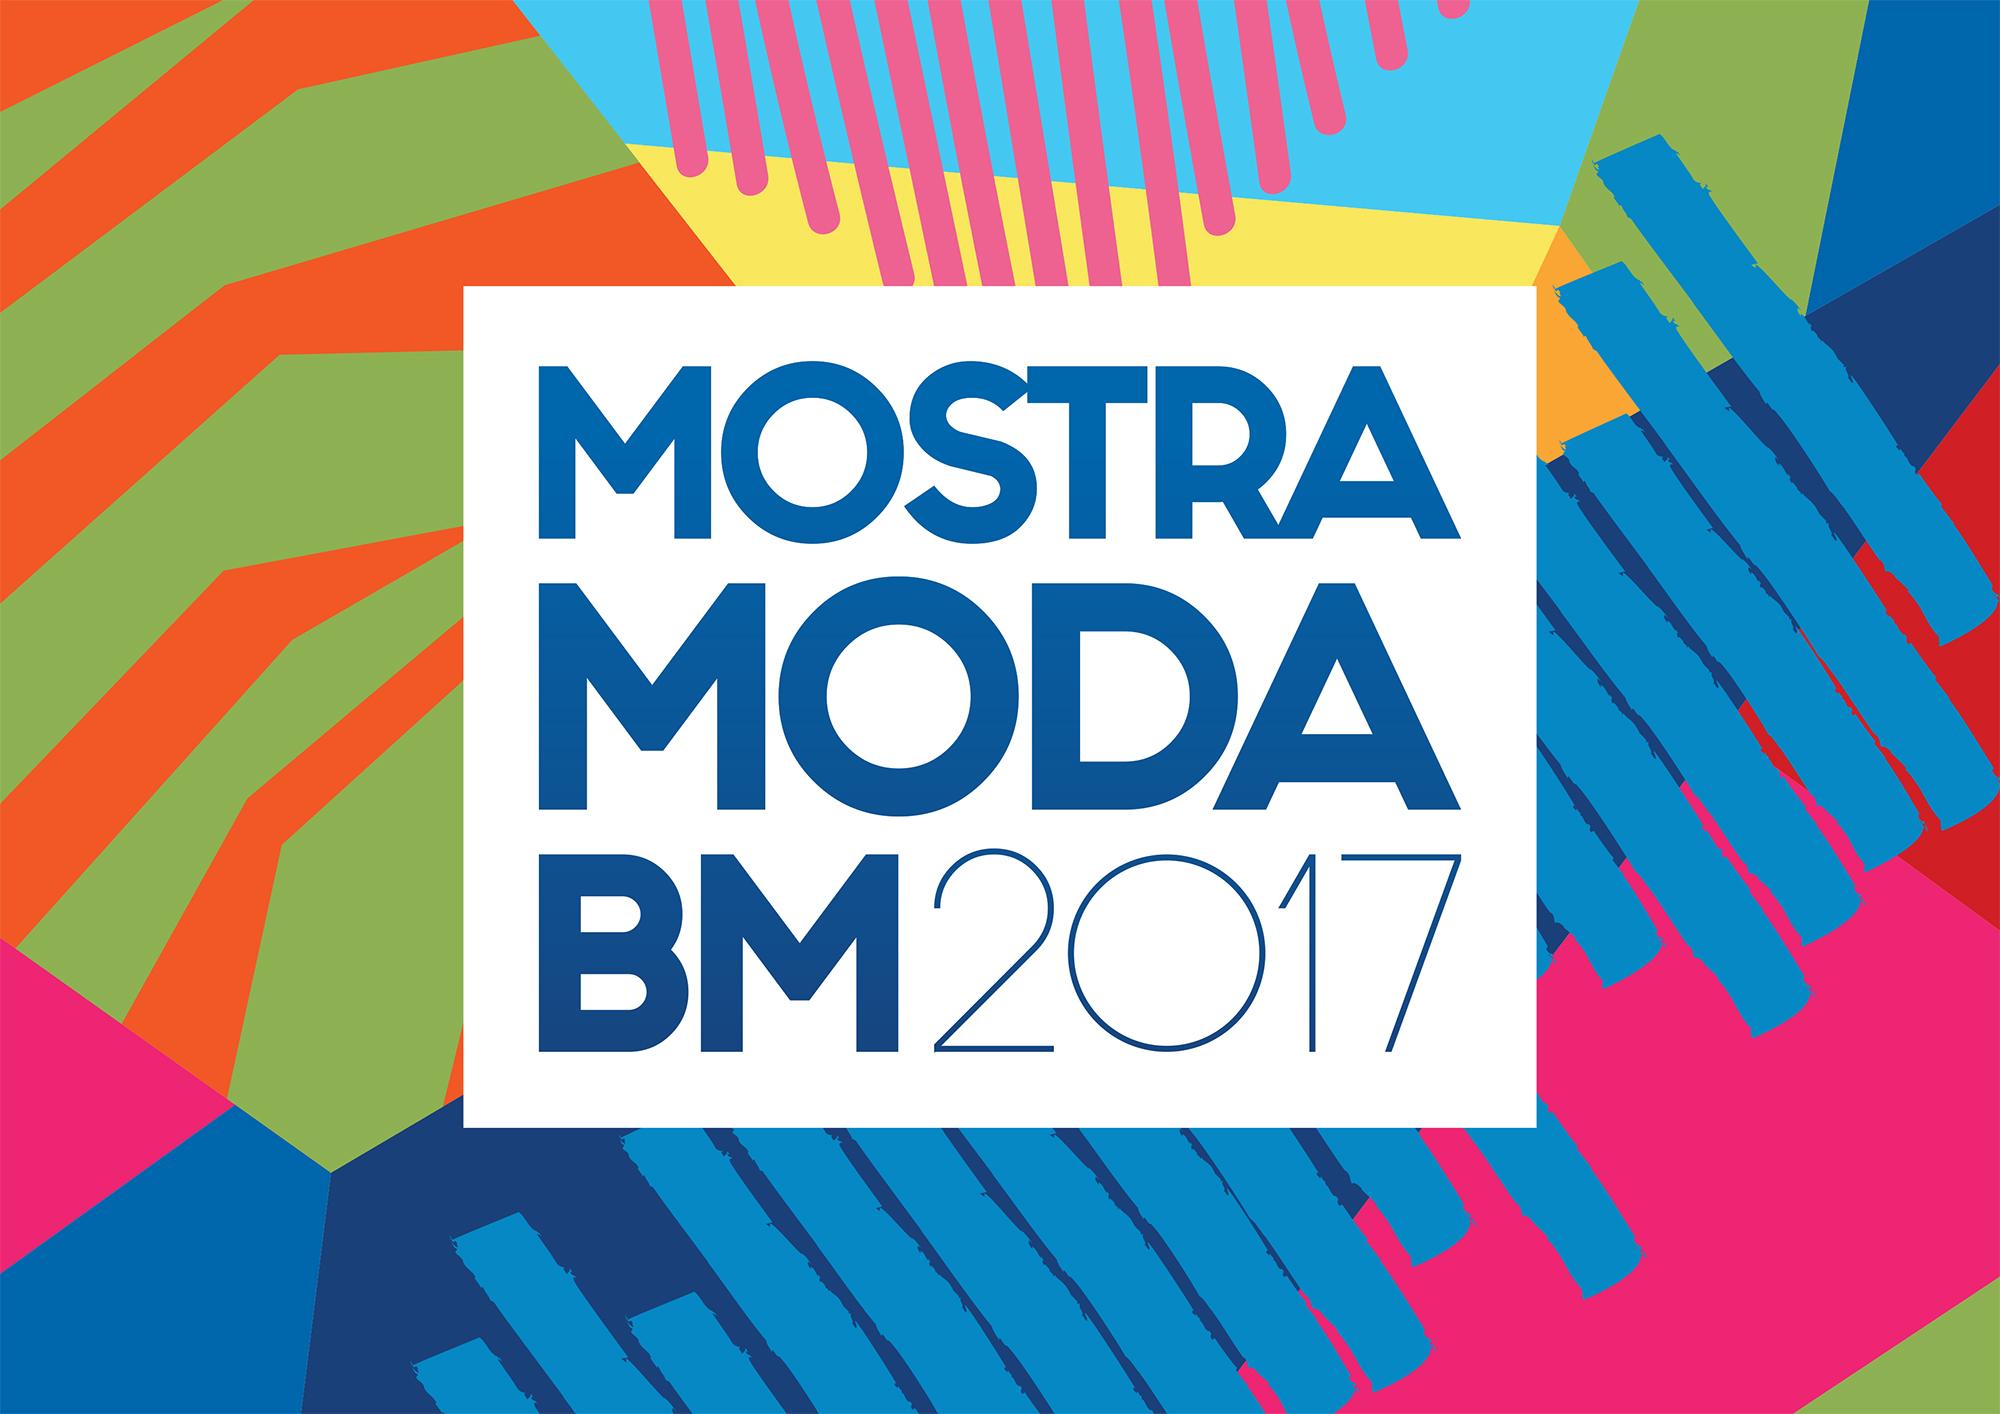 Mostra Moda BM 2017 promete agitar o interior do Estado do Rio De 12 a 14 de outubro, Barra Mansa será o ponto de encontro do setor Moda